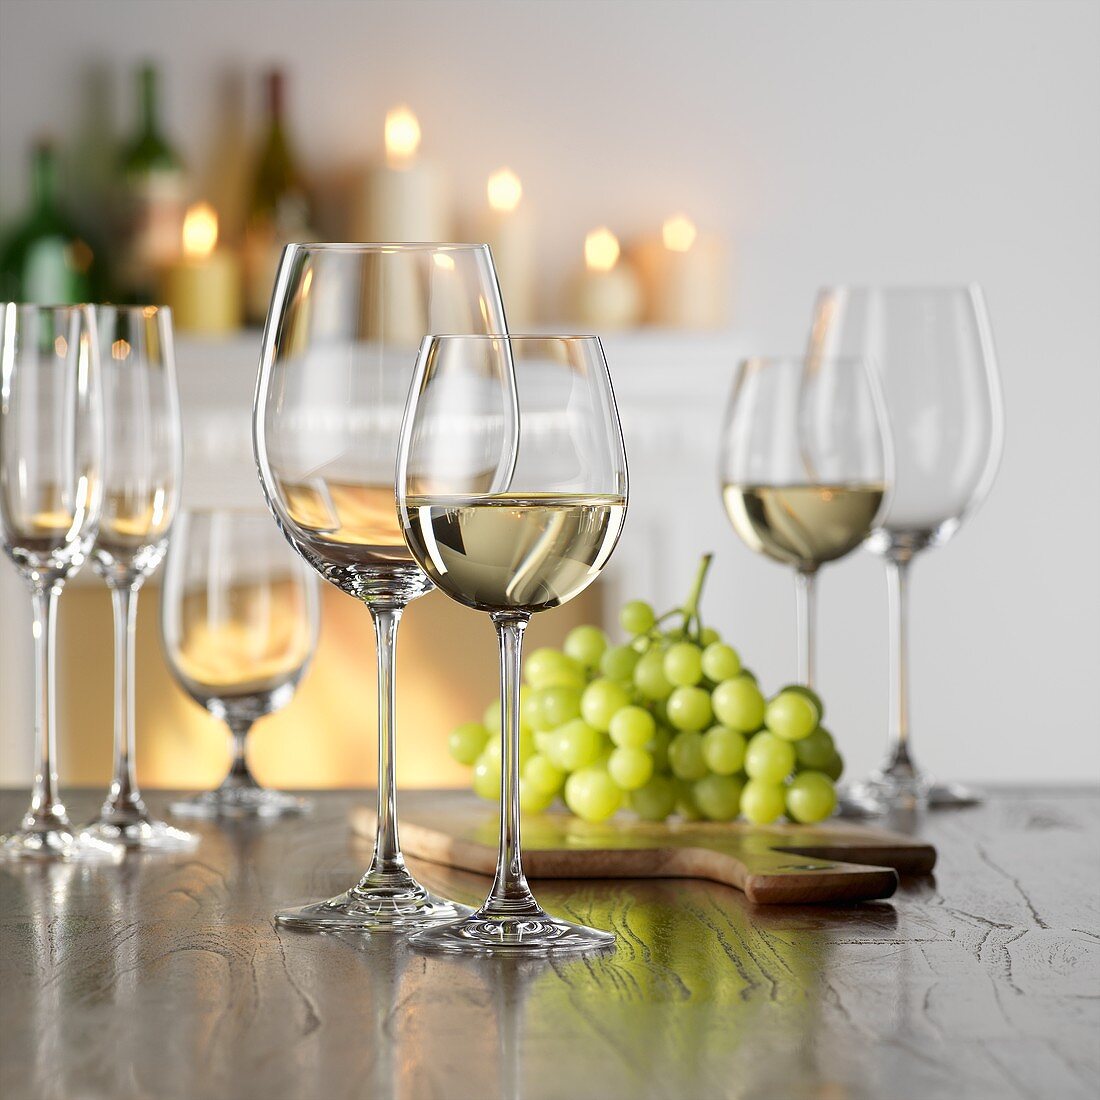 Stillleben mit Weißwein im Glas